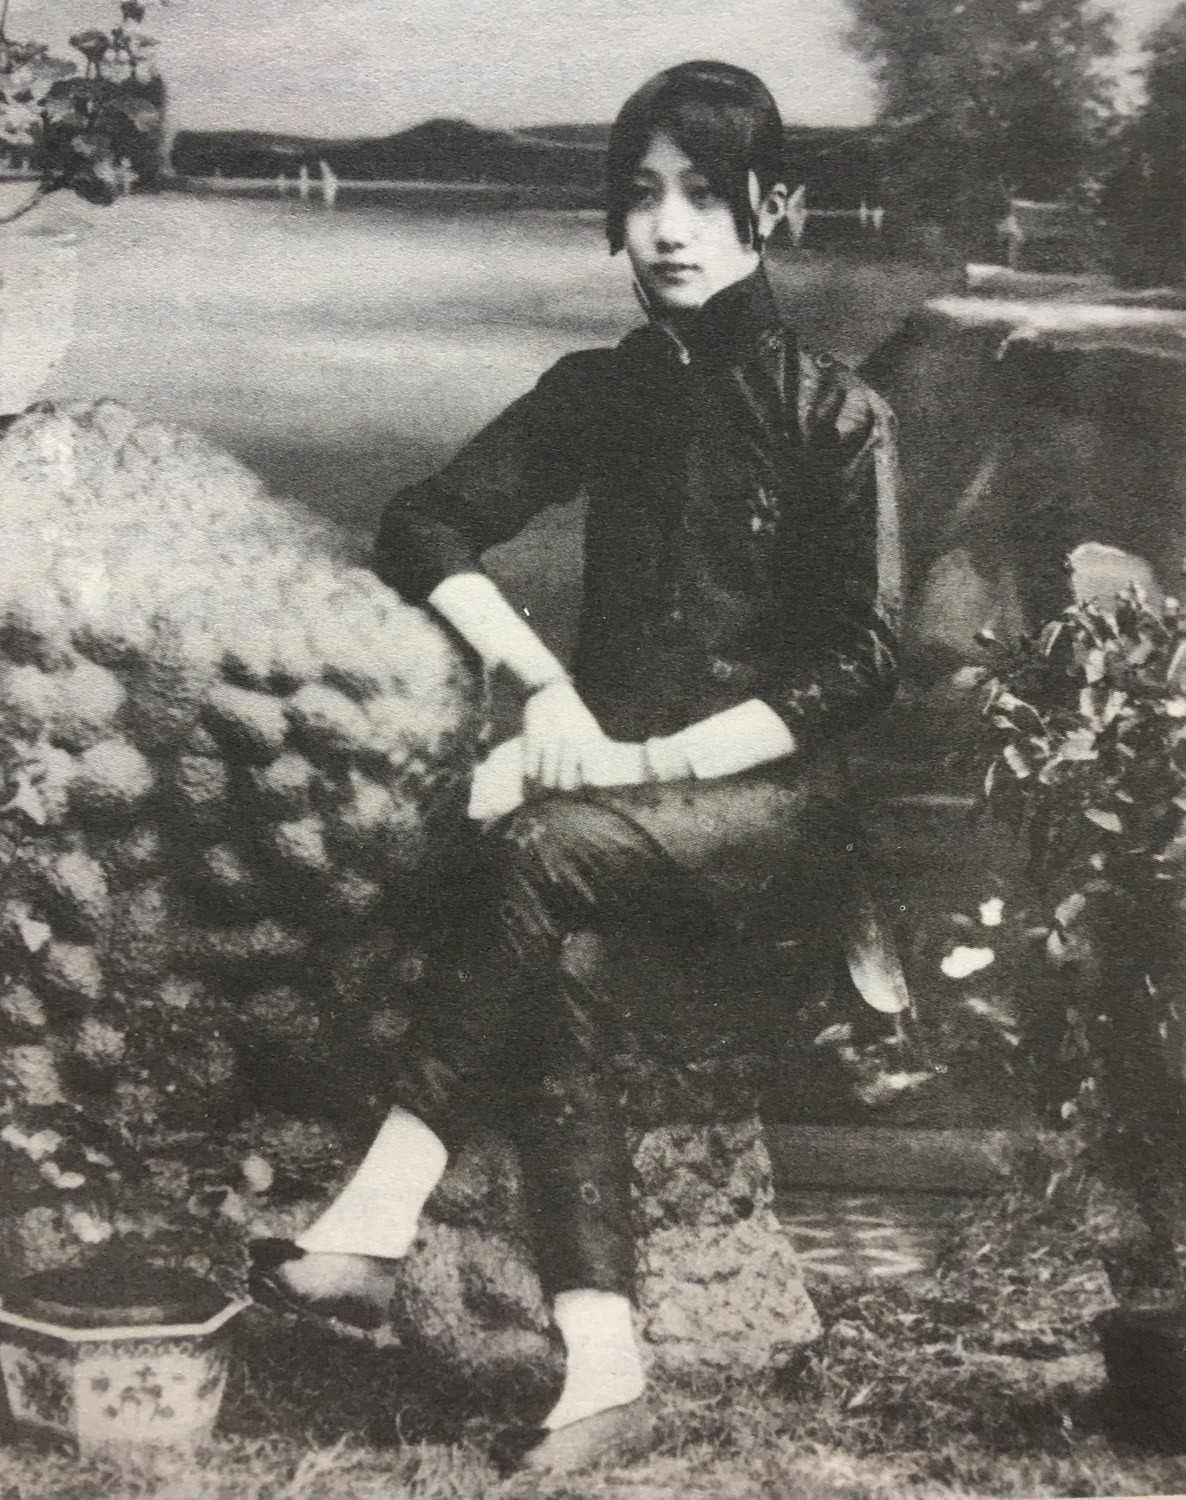 年方14岁的董竹君在妓院里顶名“杨春兰”卖唱。 这是她有生以来第一次拍照(42).jpg